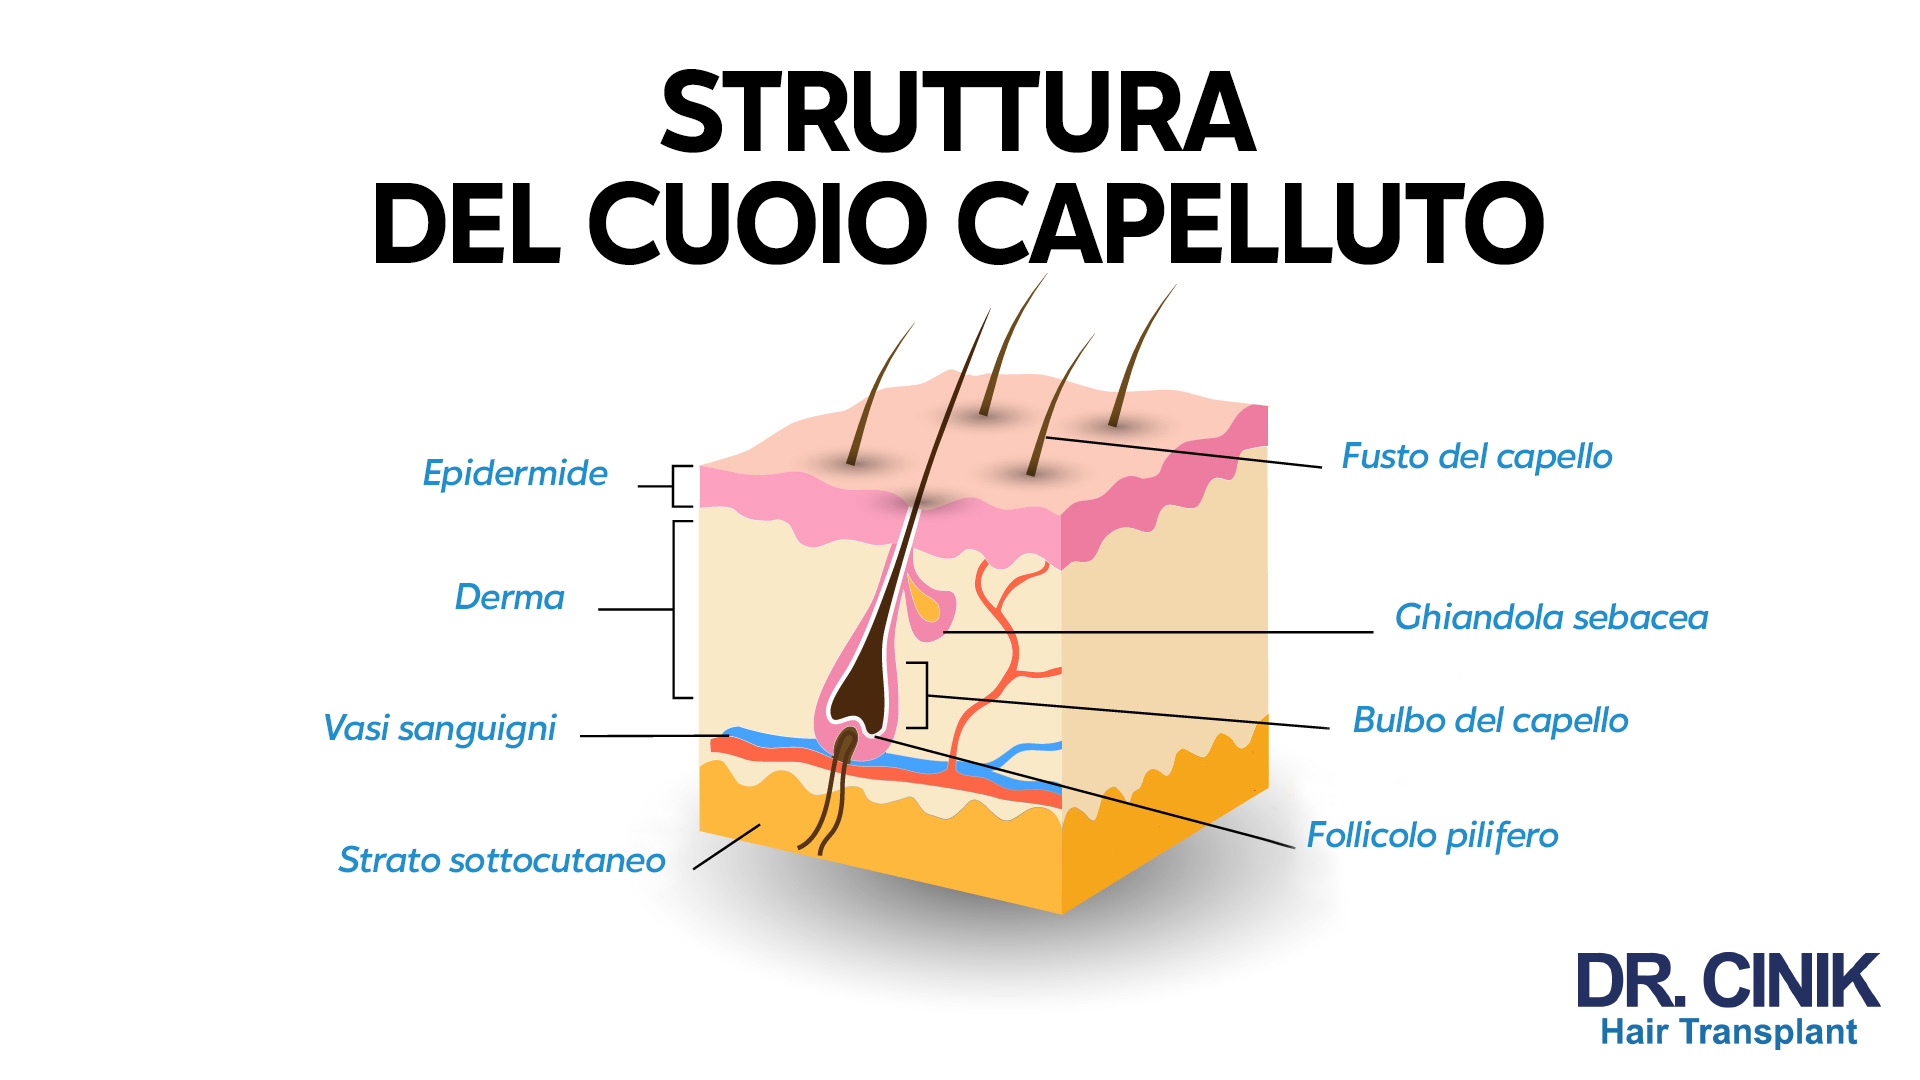 Un diagramma che mostra la "STRUTTURA DEL CUOIO CAPELLUTO" con didascalie in italiano. Partendo dalla parte superiore, sono etichettati l'epidermide, il fusto del capello, la derma, la ghiandola sebacea, i vasi sanguigni, il bulbo del capello, lo strato sottocutaneo, e il follicolo pilifero. Il logo "DR. CINIK Hair Transplant" è posizionato nell'angolo in basso a destra.